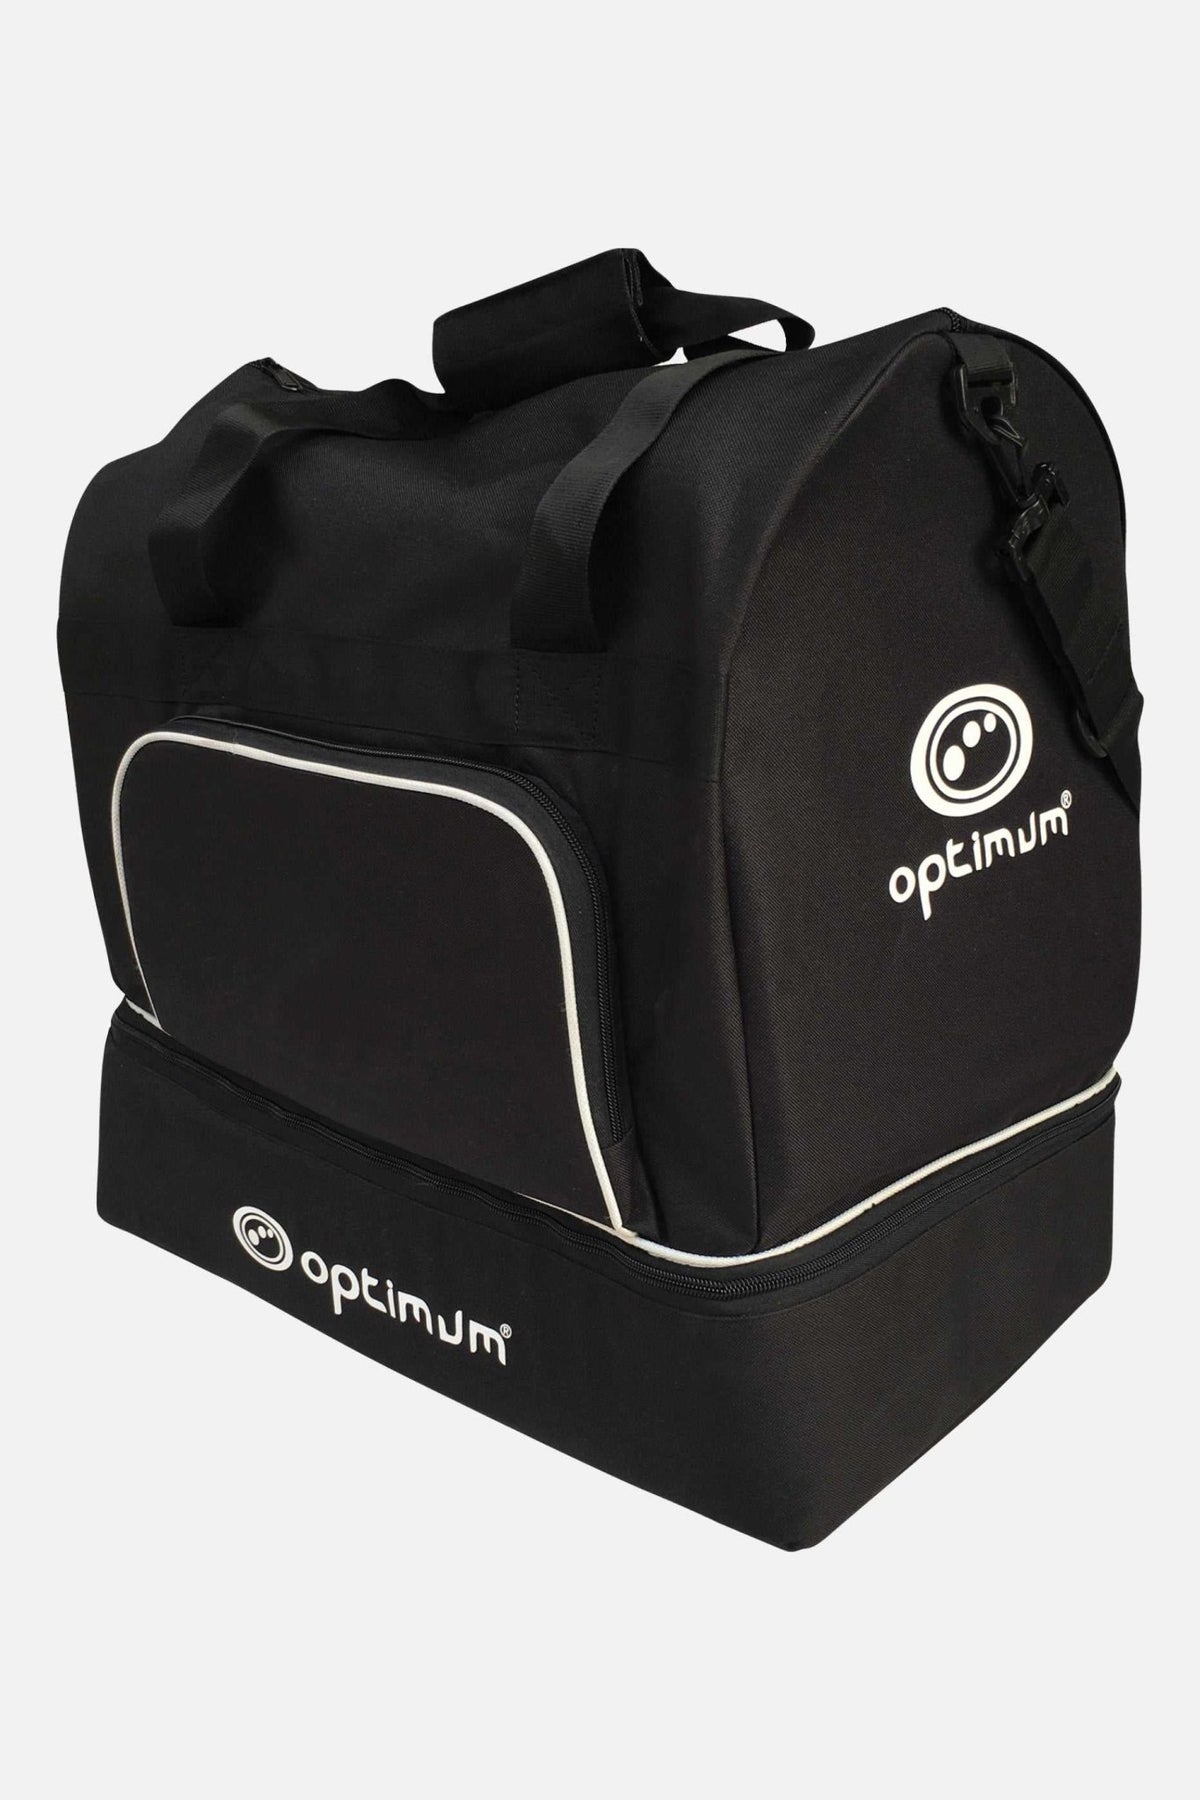 Optimum Sport Player Kit Bag Durable Equipment Bags - Optimum